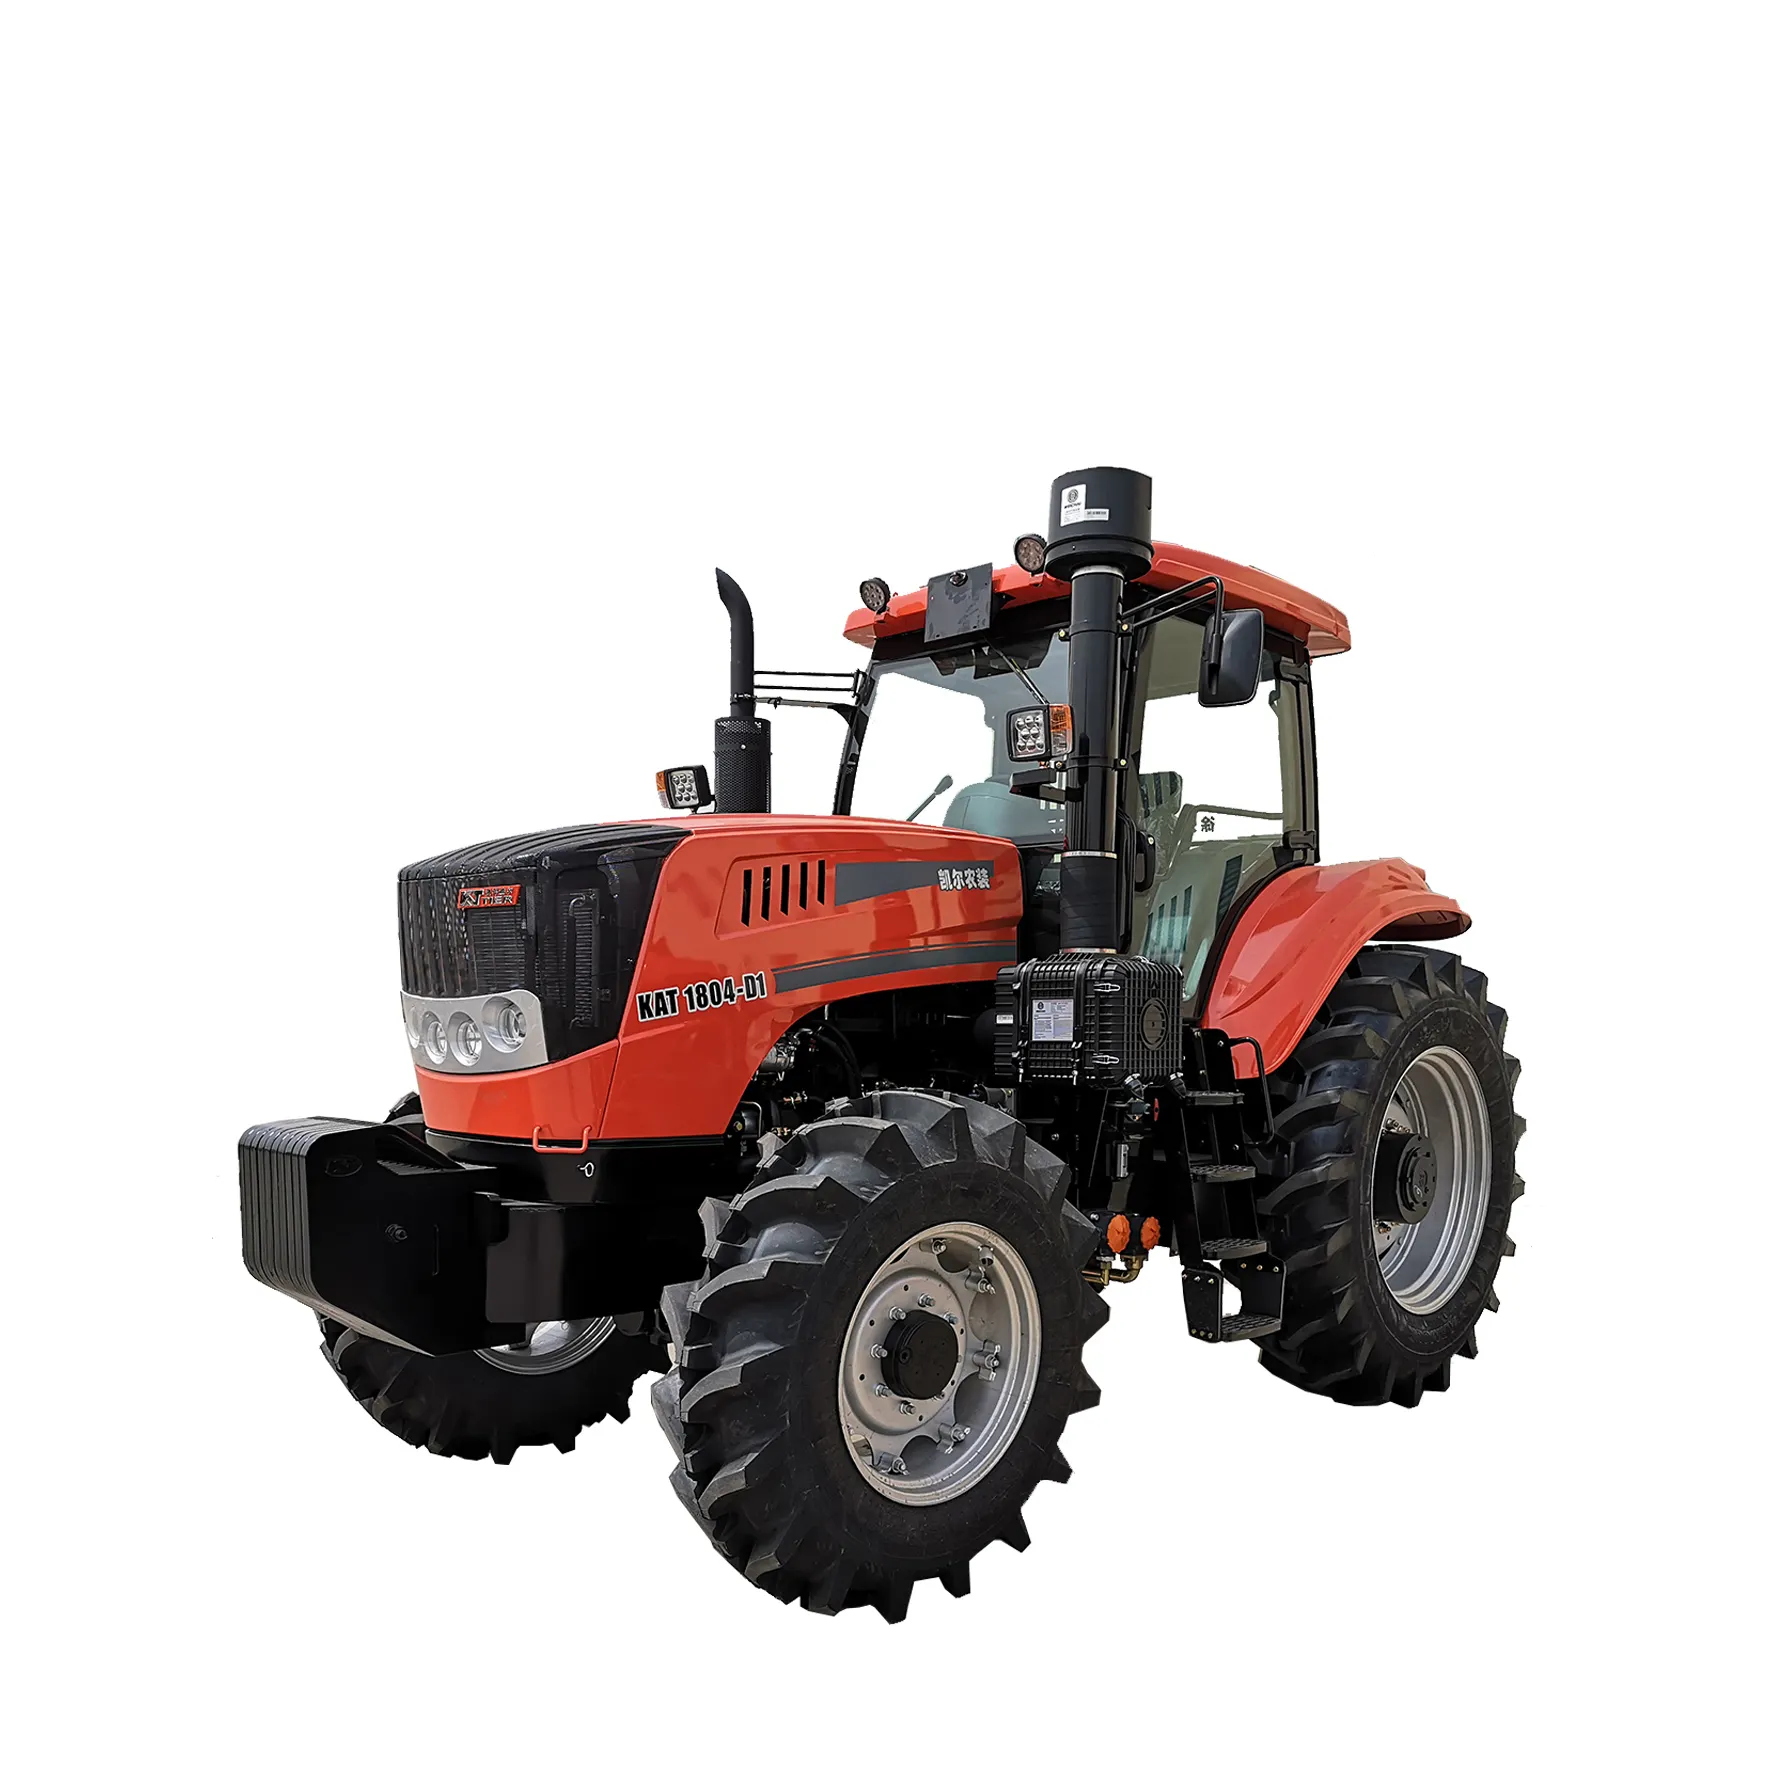 Tractor de alta potencia hpHigh, peso delantero, Kattier conectado, fabricante chino fiable para tractor de alta resistencia, 180